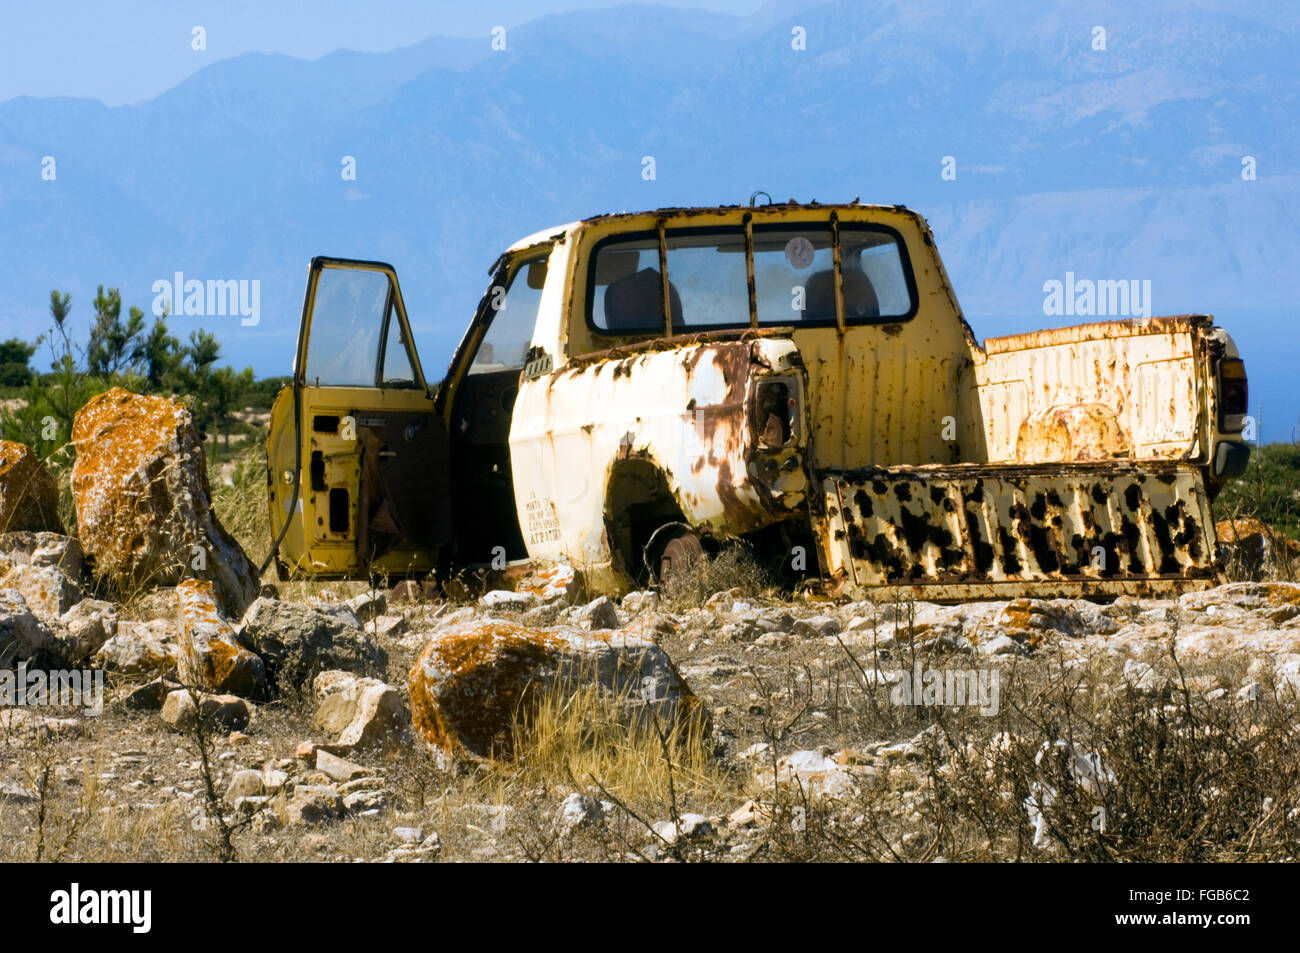 Griechenland, Kreta, Insel Gavdos, ein Autowrack in der Landschaft Foto Stock